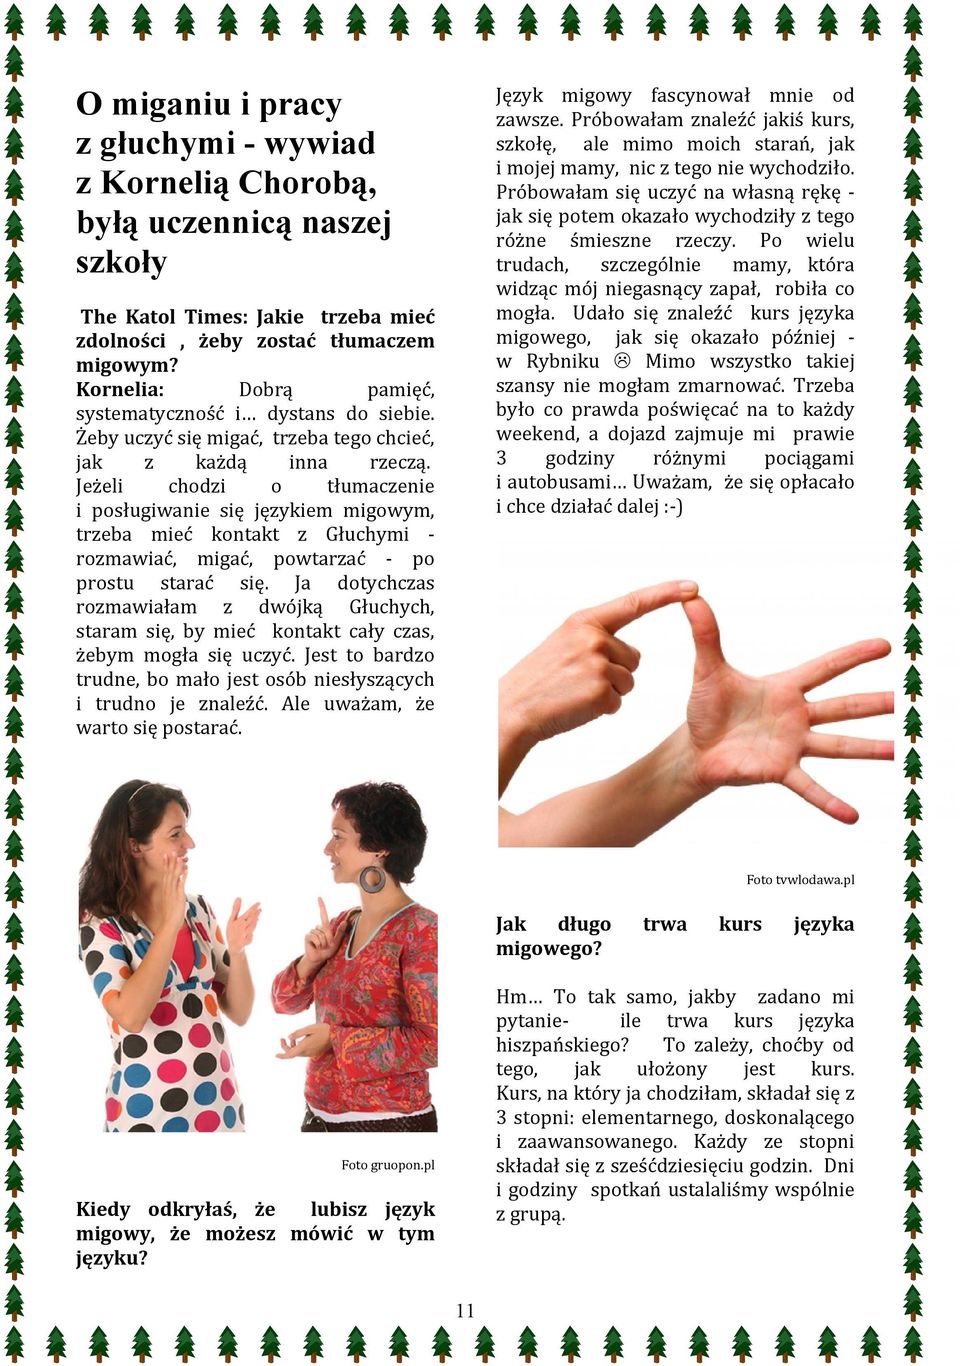 Jeżeli chodzi o tłumaczenie i posługiwanie się językiem migowym, trzeba mieć kontakt z Głuchymi rozmawiać, migać, powtarzać po prostu starać się.